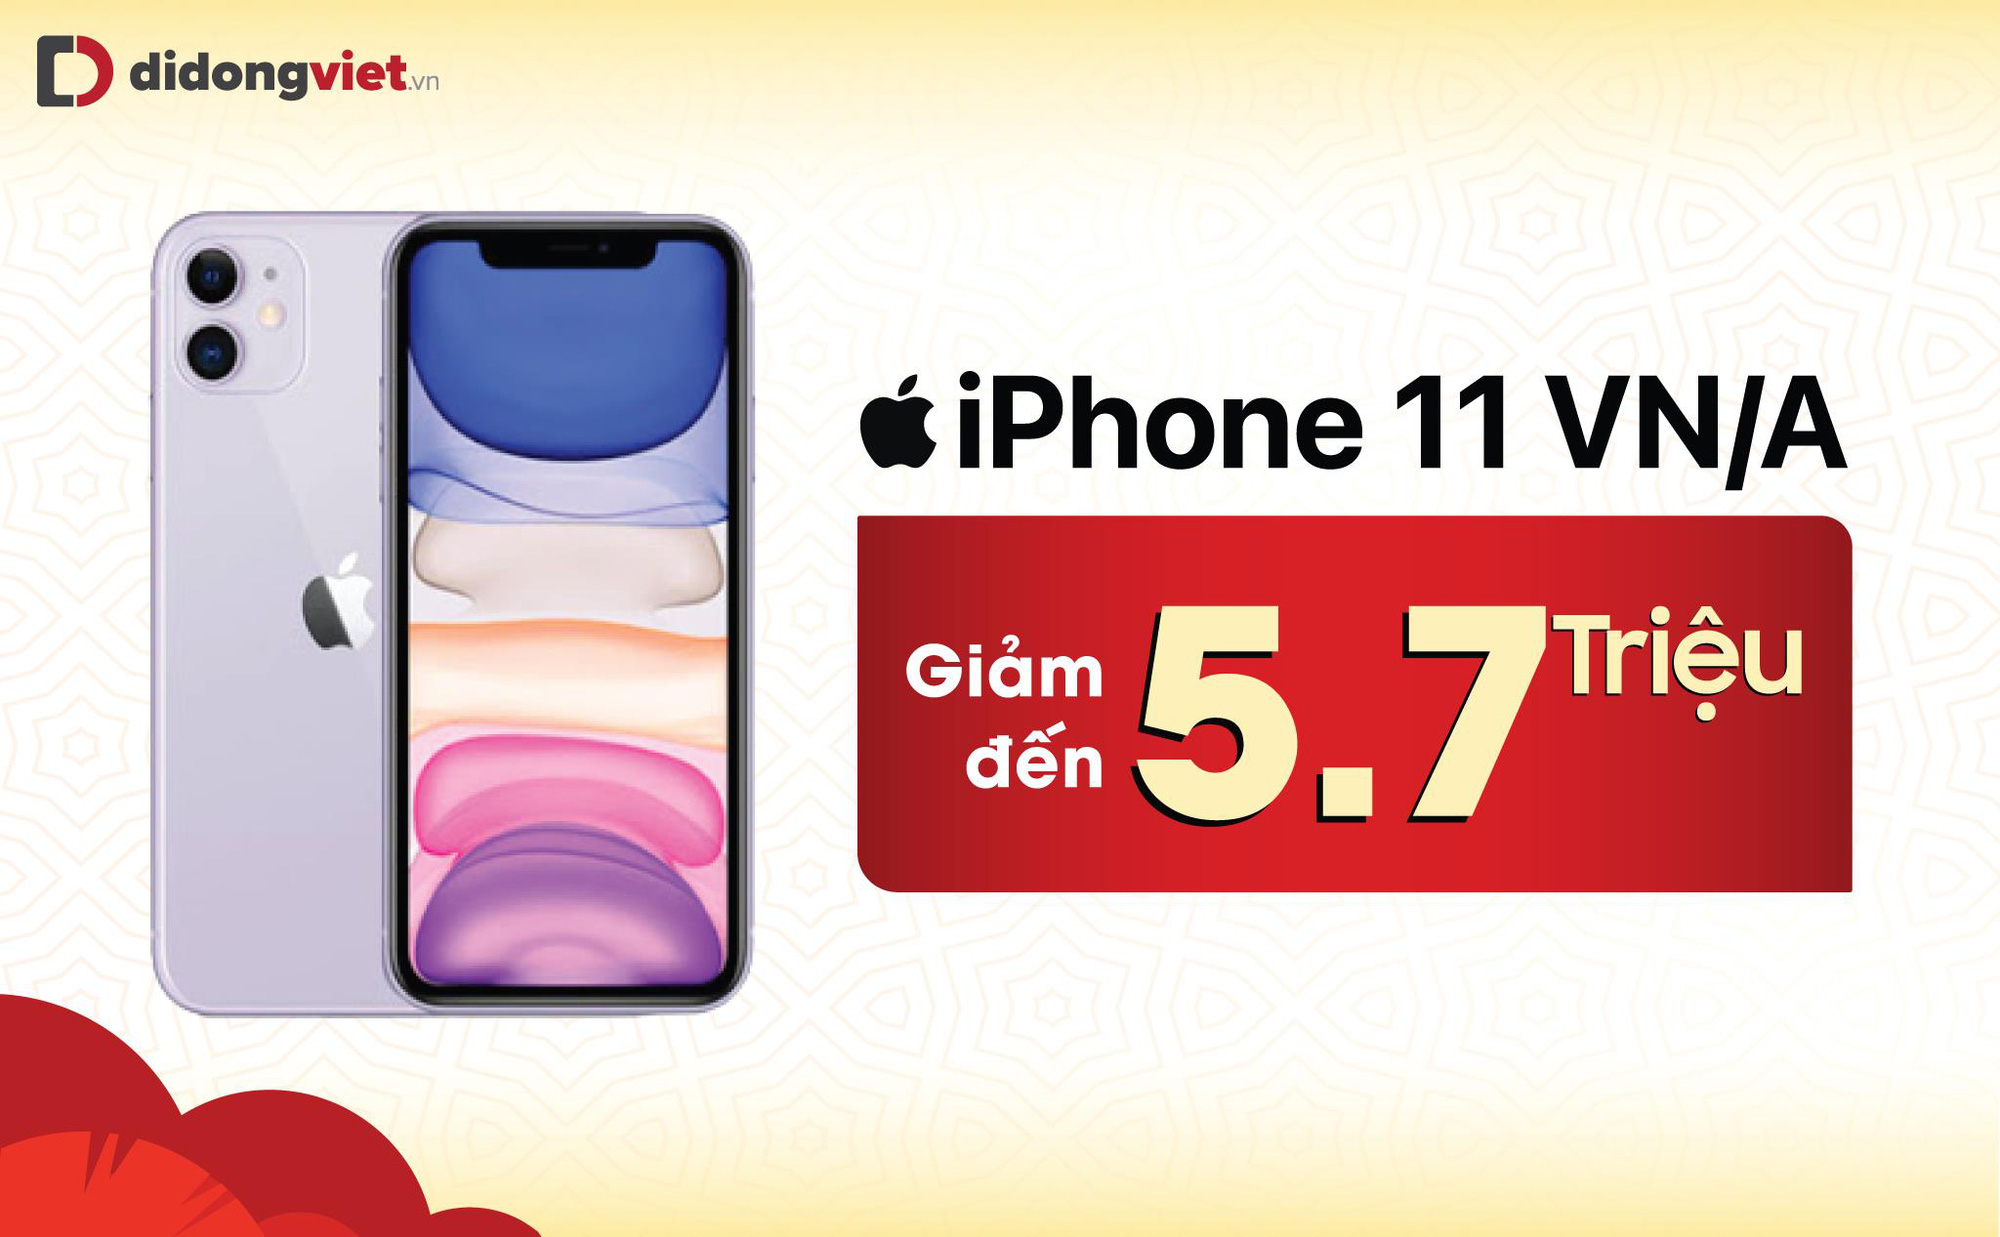 iPhone 11 lập kỷ lục về mức giảm giá và sức mua dịp Tết - Ảnh 1.